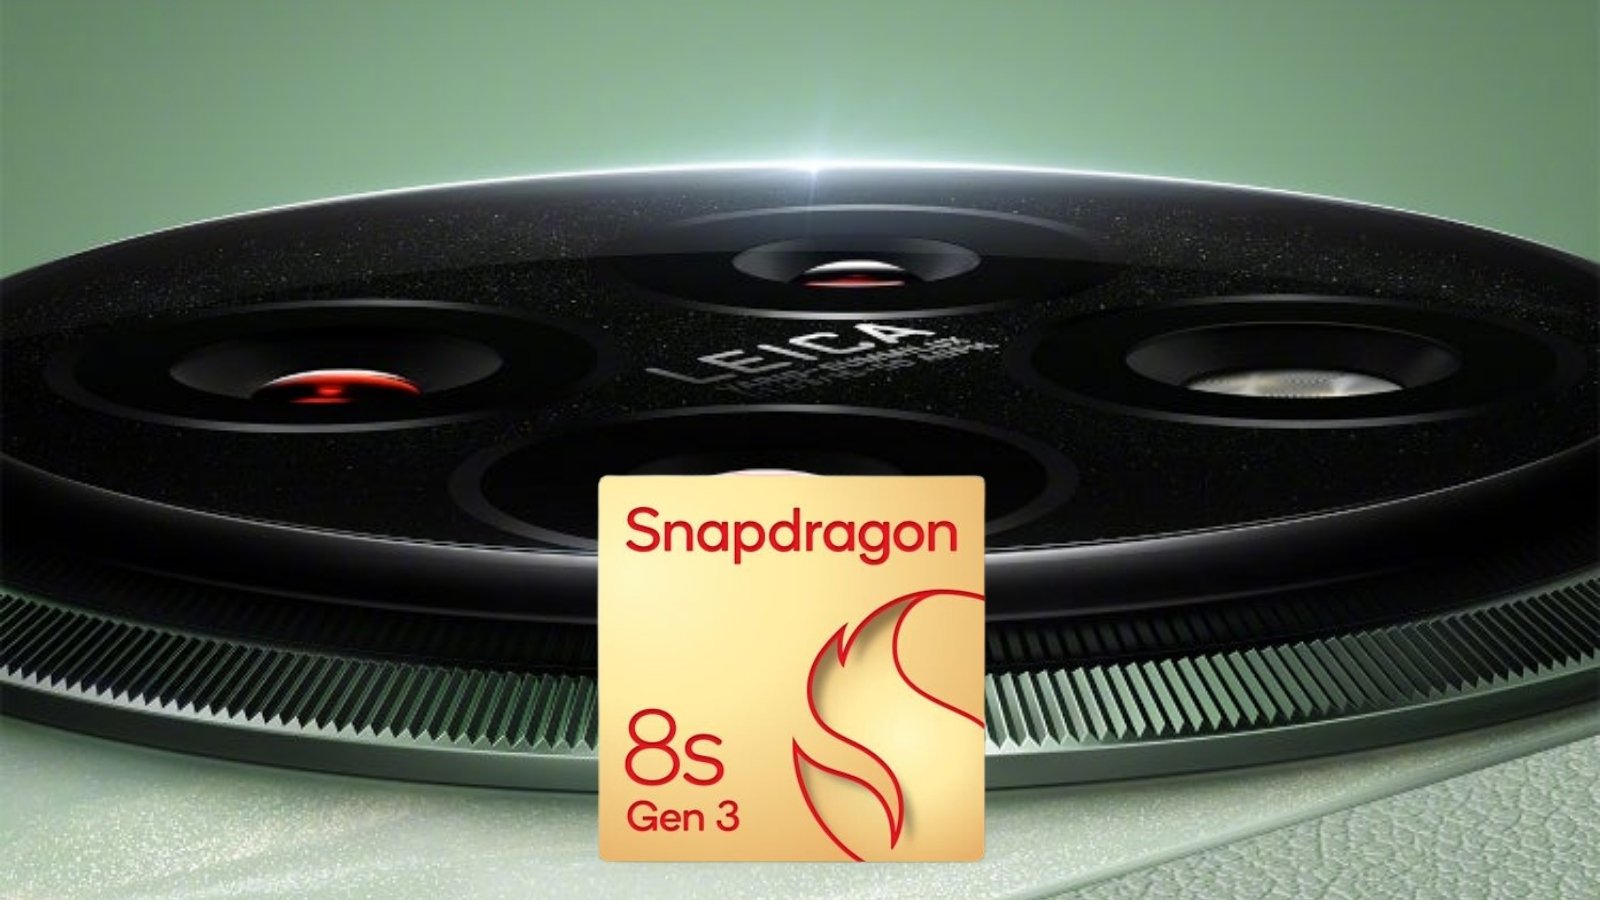 Snapdragon 8s Gen 3 ile Gelecek Telefonlar Belli Oldu